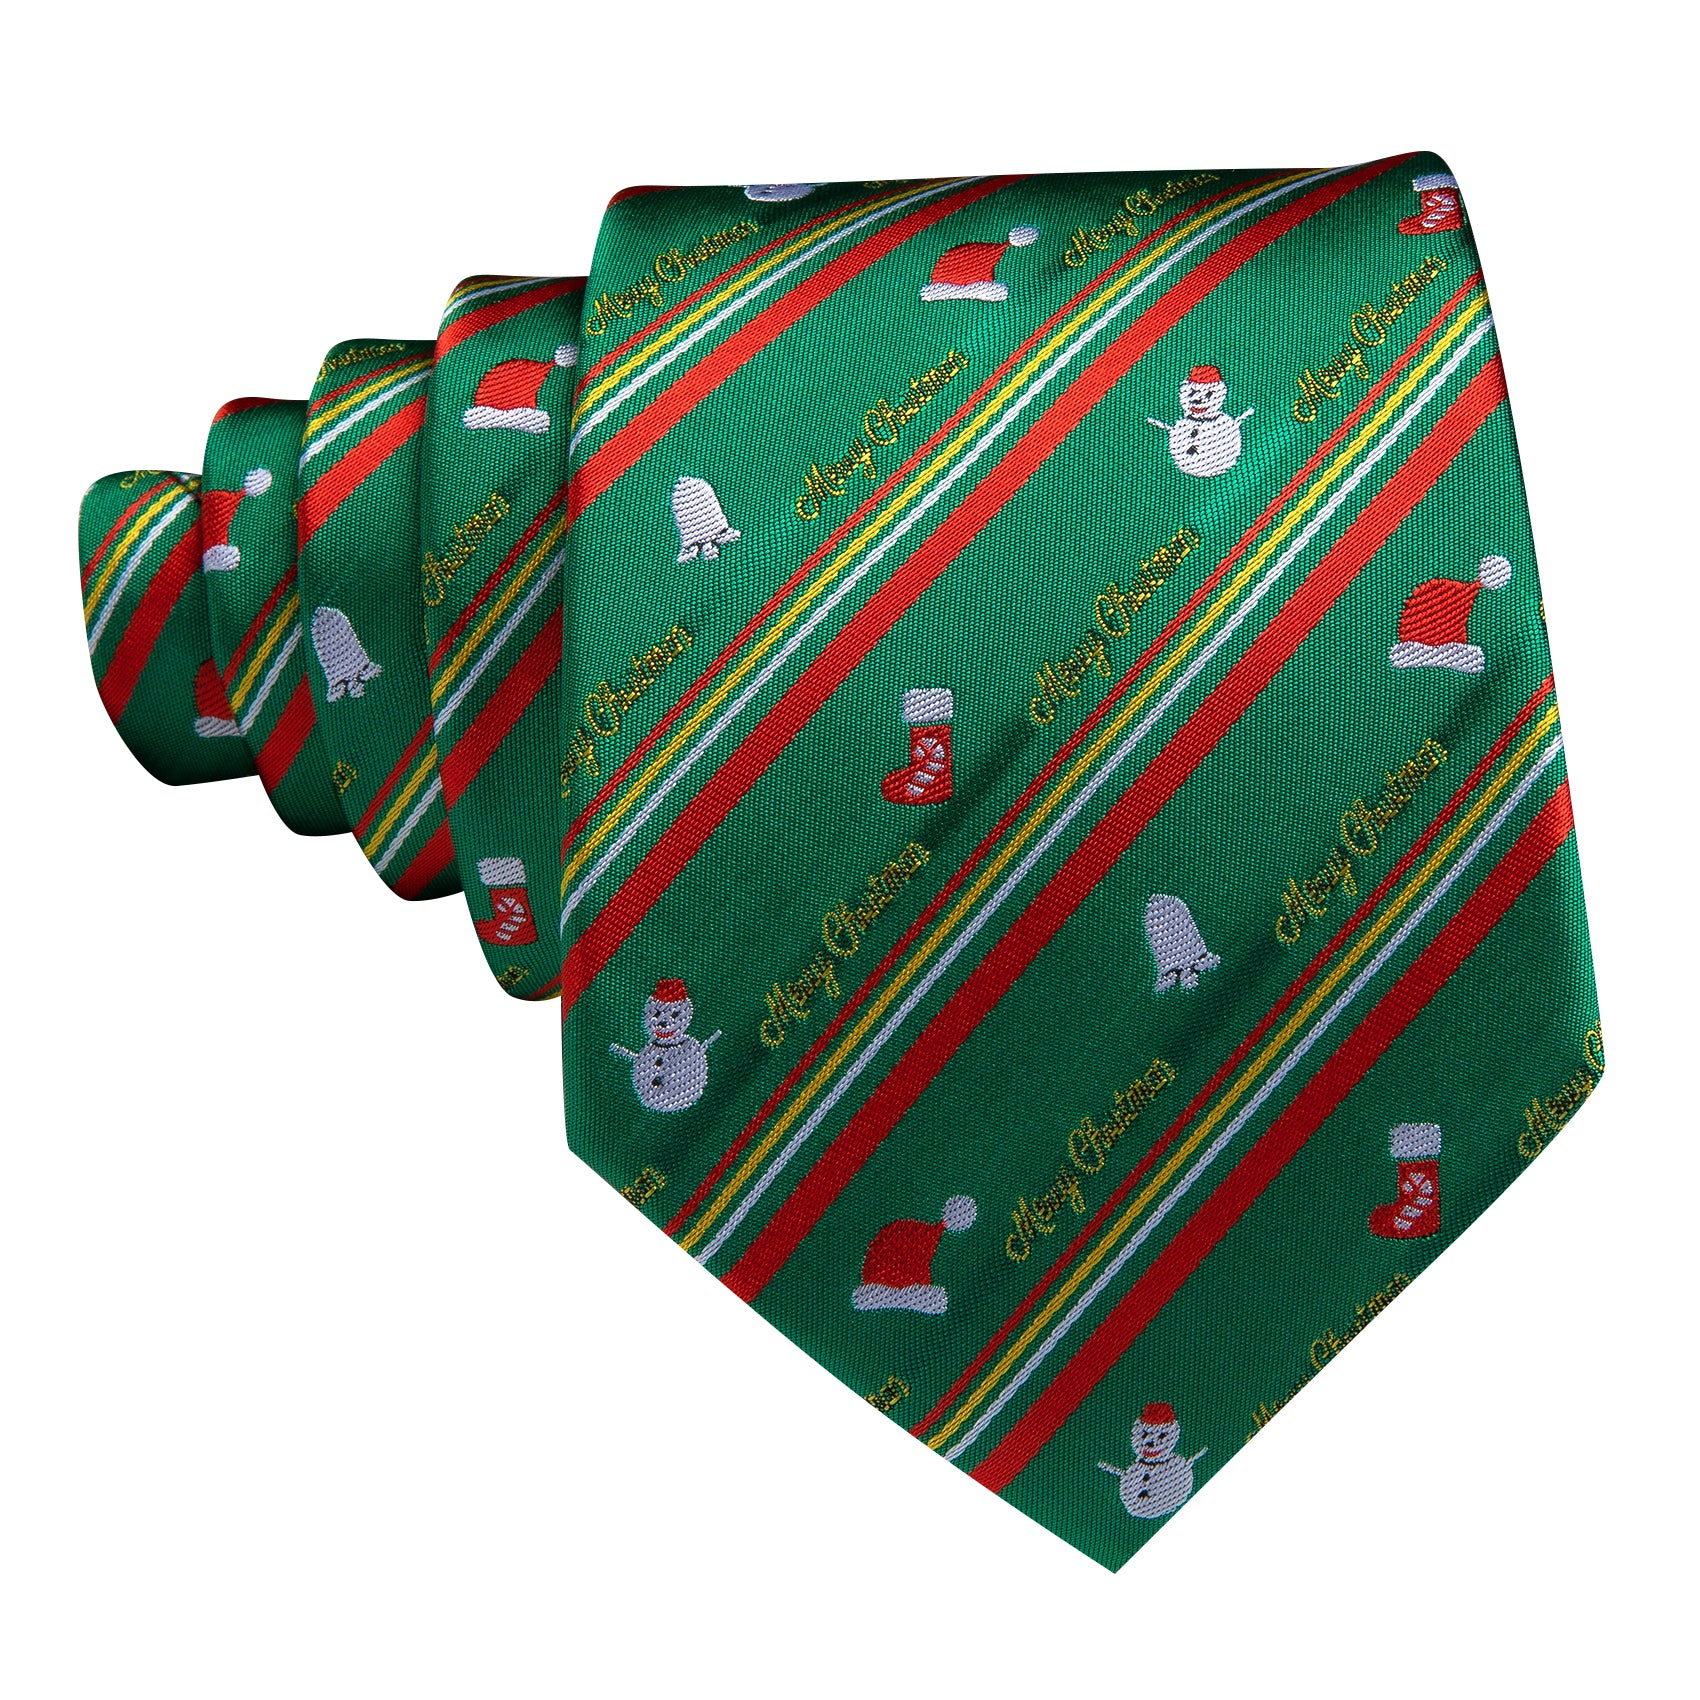 Barry.wang Christmas Tie Green Red Snowman Pattern Men's Tie Hanky Cufflinks Set